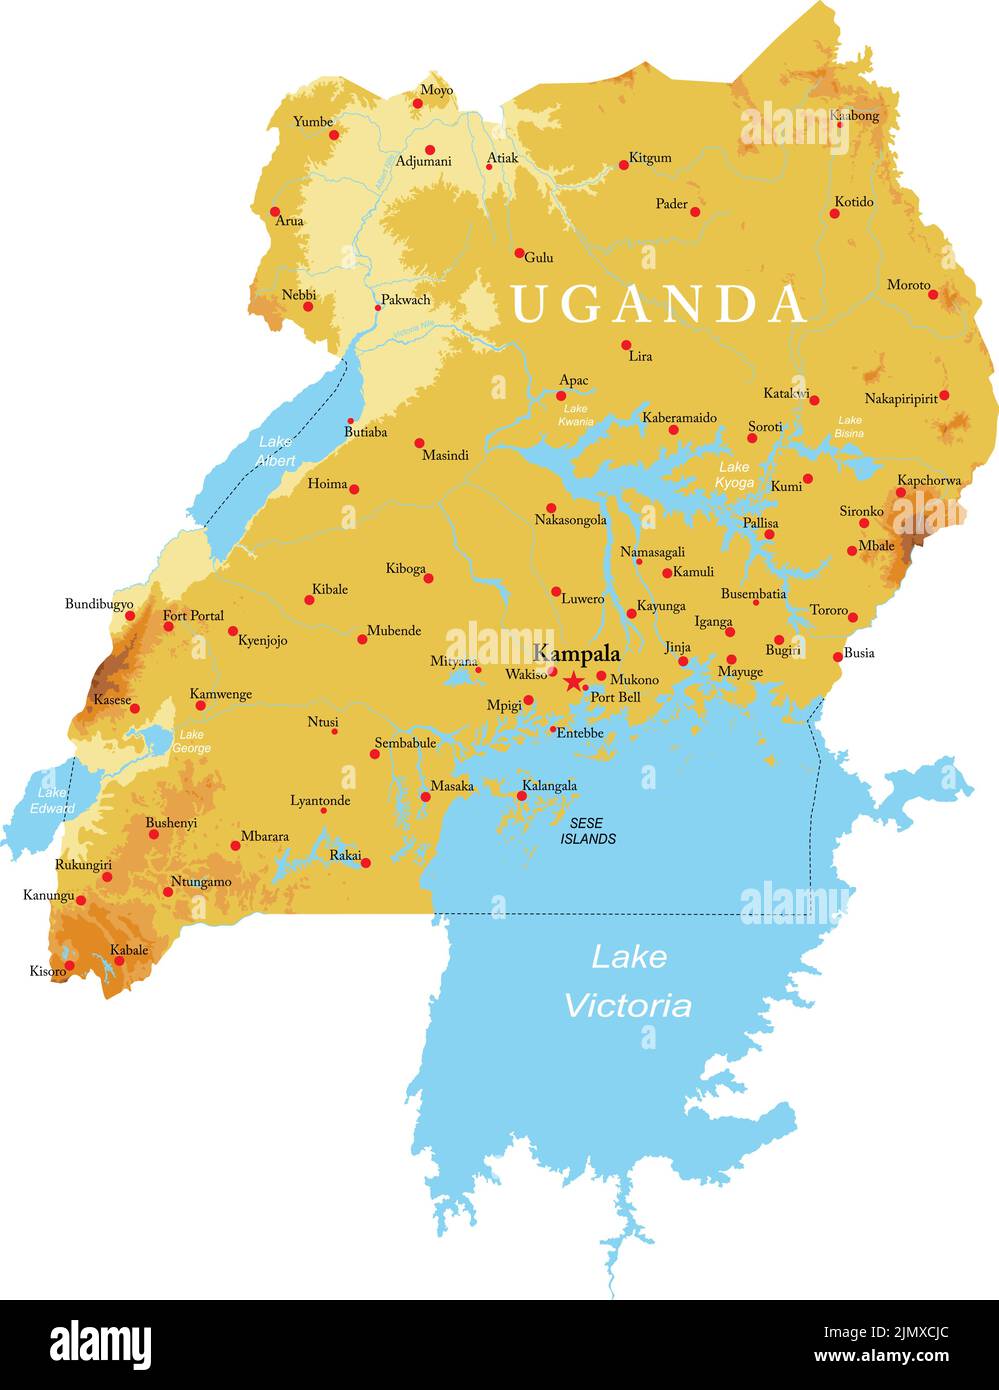 Mappa fisica altamente dettagliata dell'Uganda in formato vettoriale, con tutte le forme di rilievo, le regioni e le grandi città. Illustrazione Vettoriale